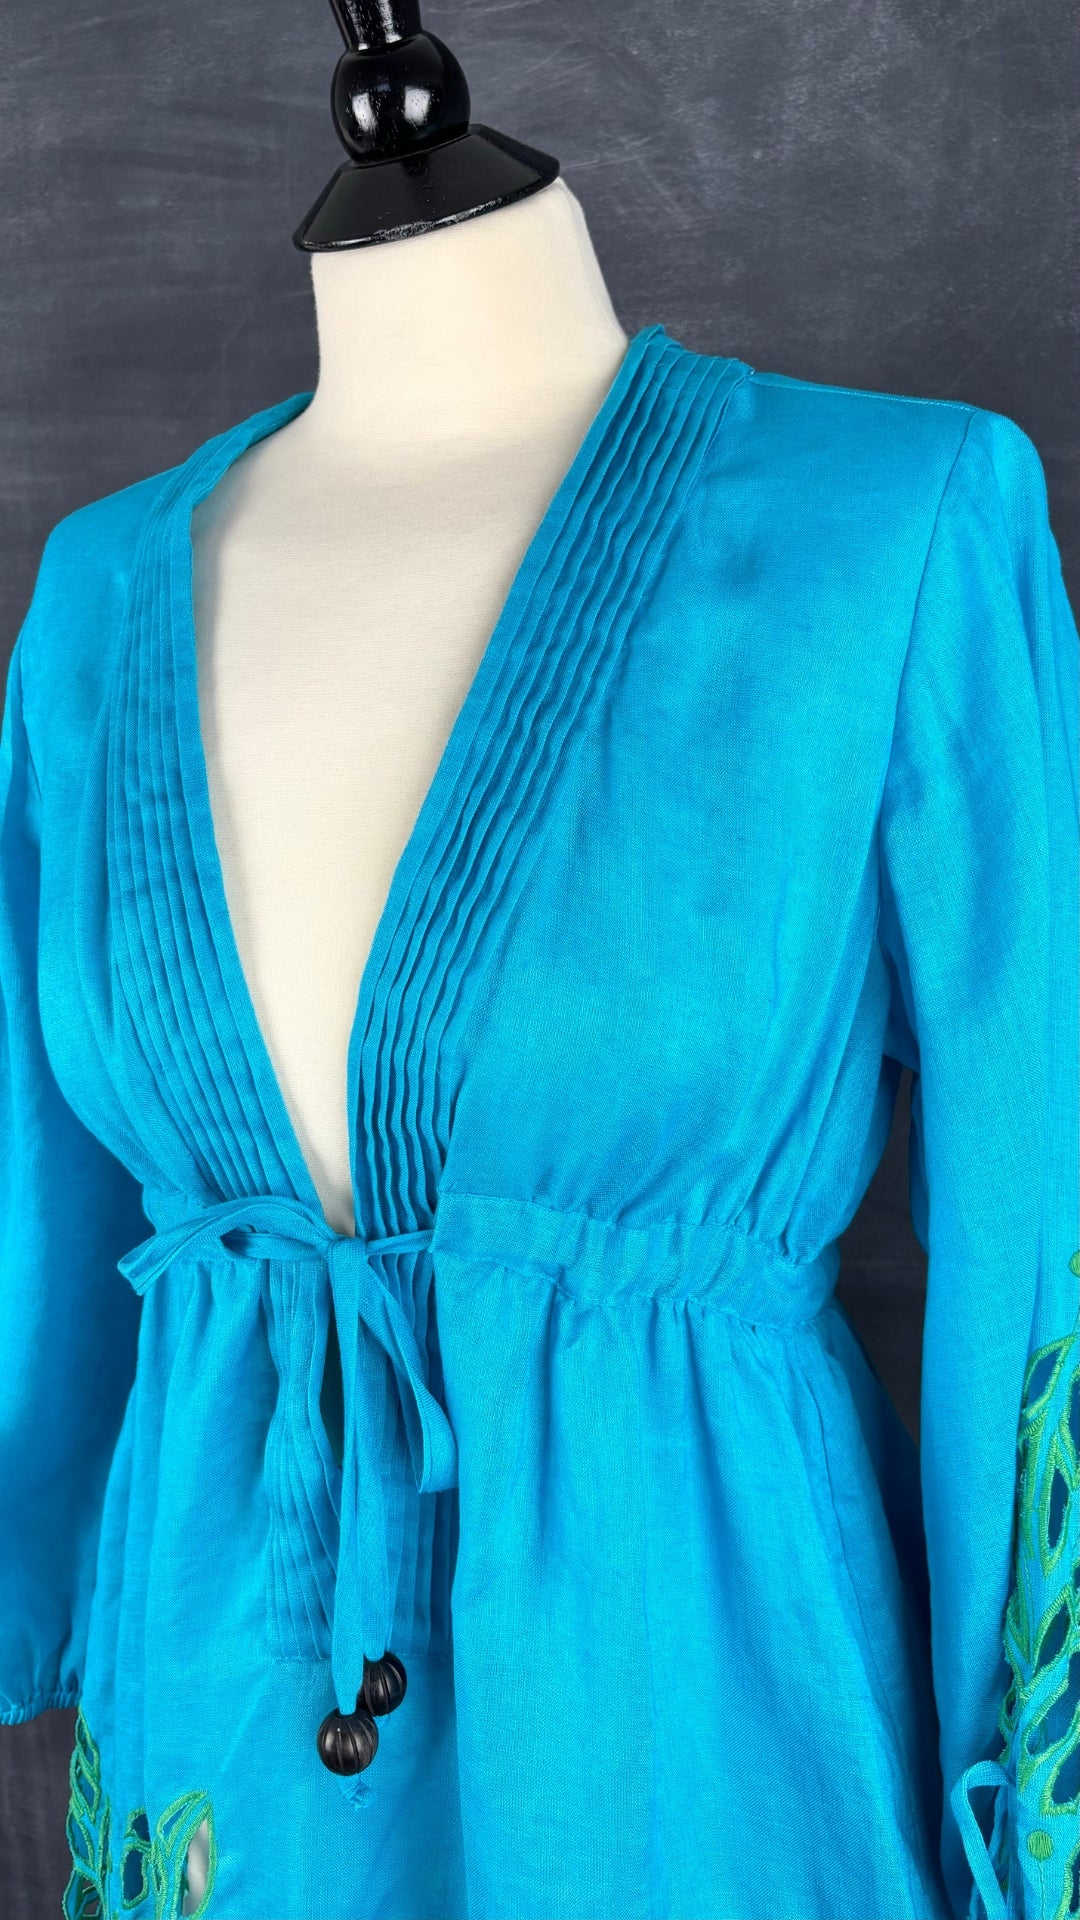 Robe de plage en lin turquoise Diane von Furstenberg, taille small. Vue de l'encolure.